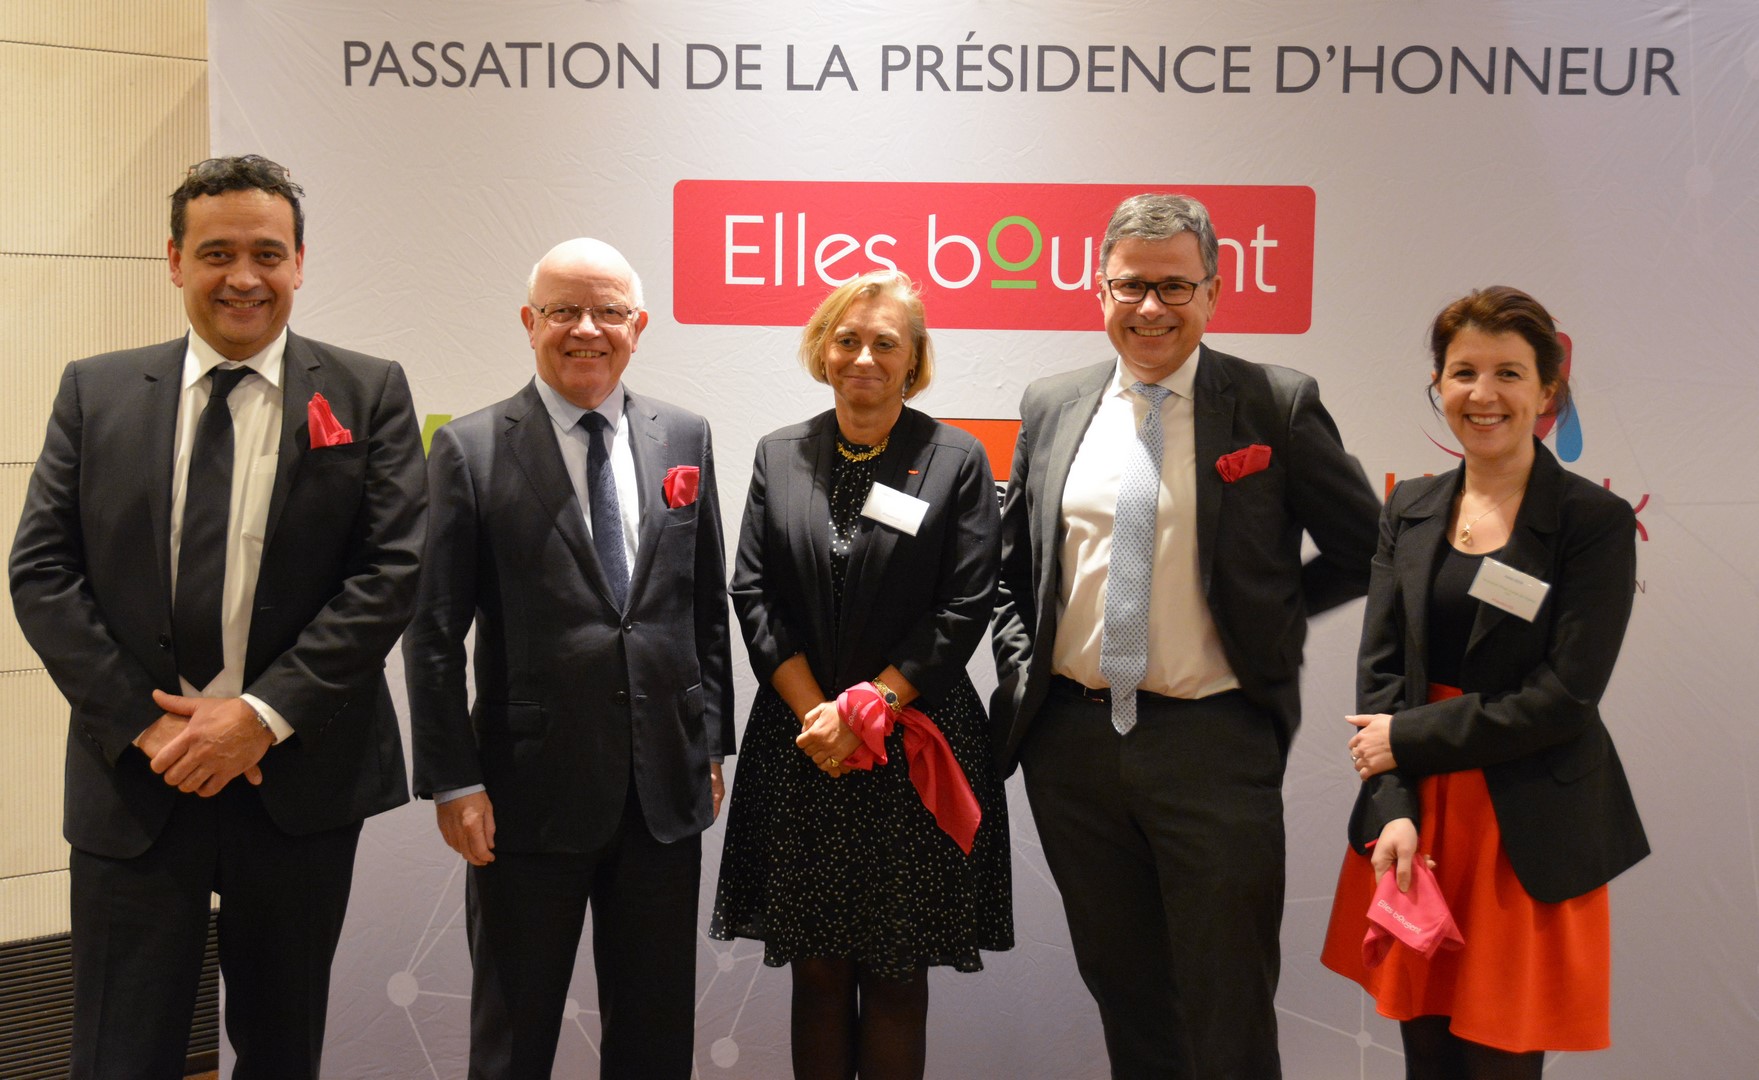 Passation de présidence d'honneur d'Elles Bougent 2017-2018 avec Philippe Bonnave, Bruno Guillemet et Marie-Sophie Pawlak